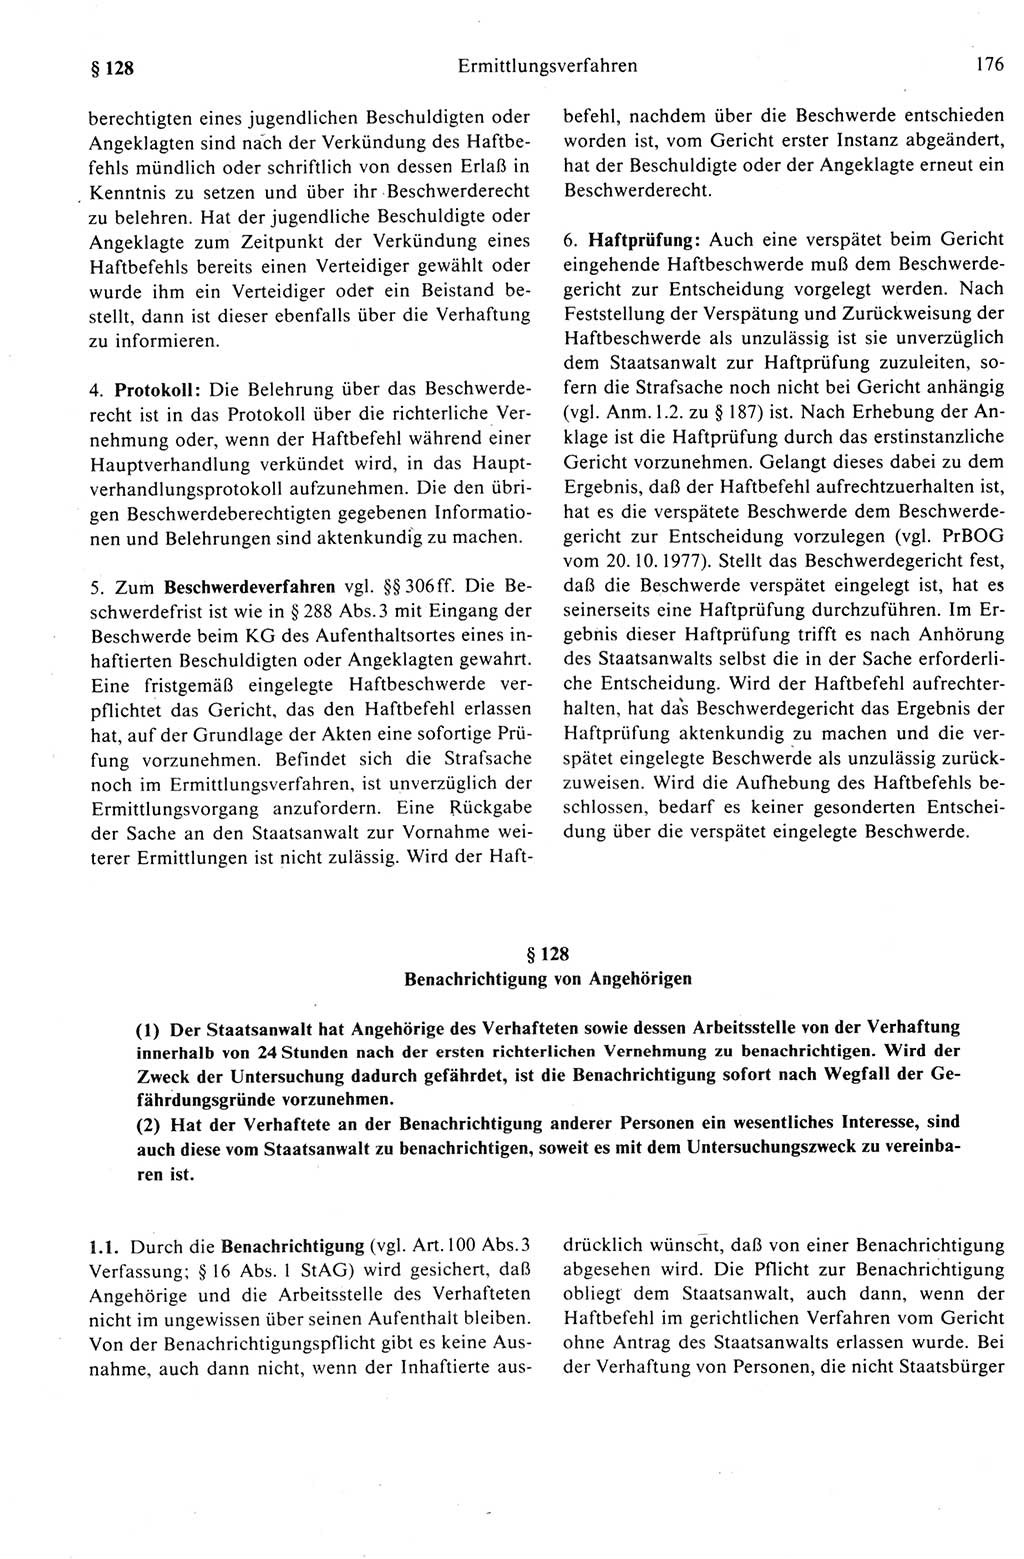 Strafprozeßrecht der DDR (Deutsche Demokratische Republik), Kommentar zur Strafprozeßordnung (StPO) 1989, Seite 176 (Strafprozeßr. DDR Komm. StPO 1989, S. 176)